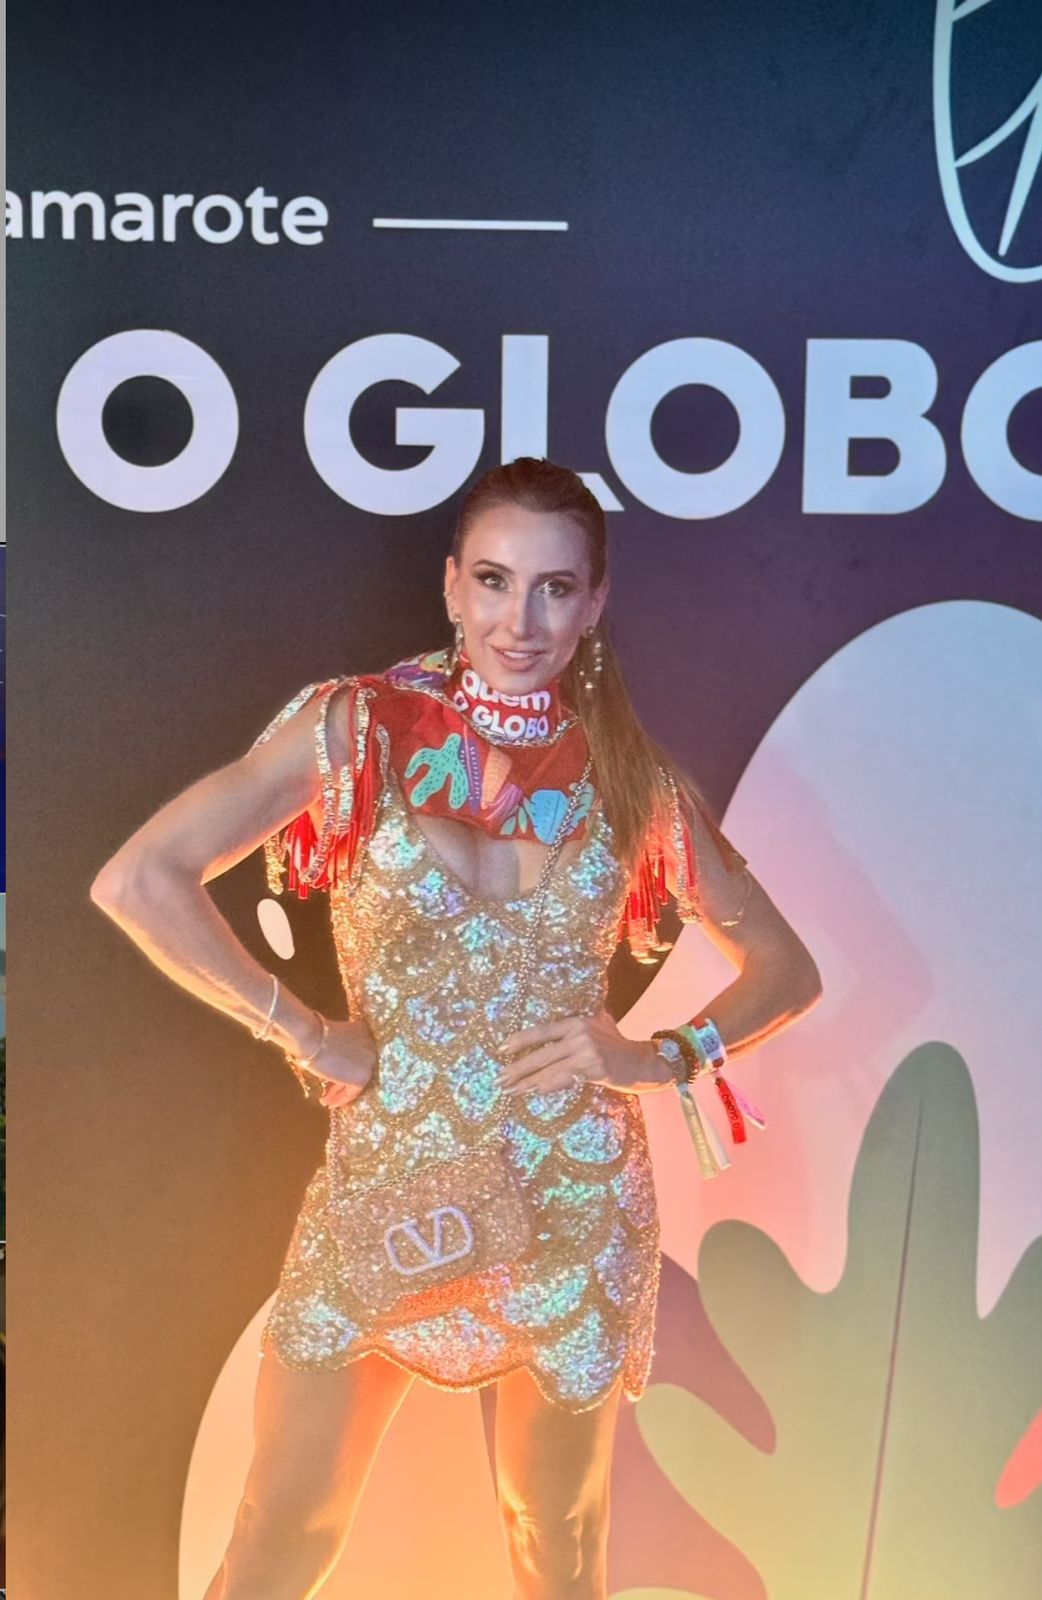 Esbanjando charme e beleza, Melaine Fernandes marca presença no Camarote Quem O Globo